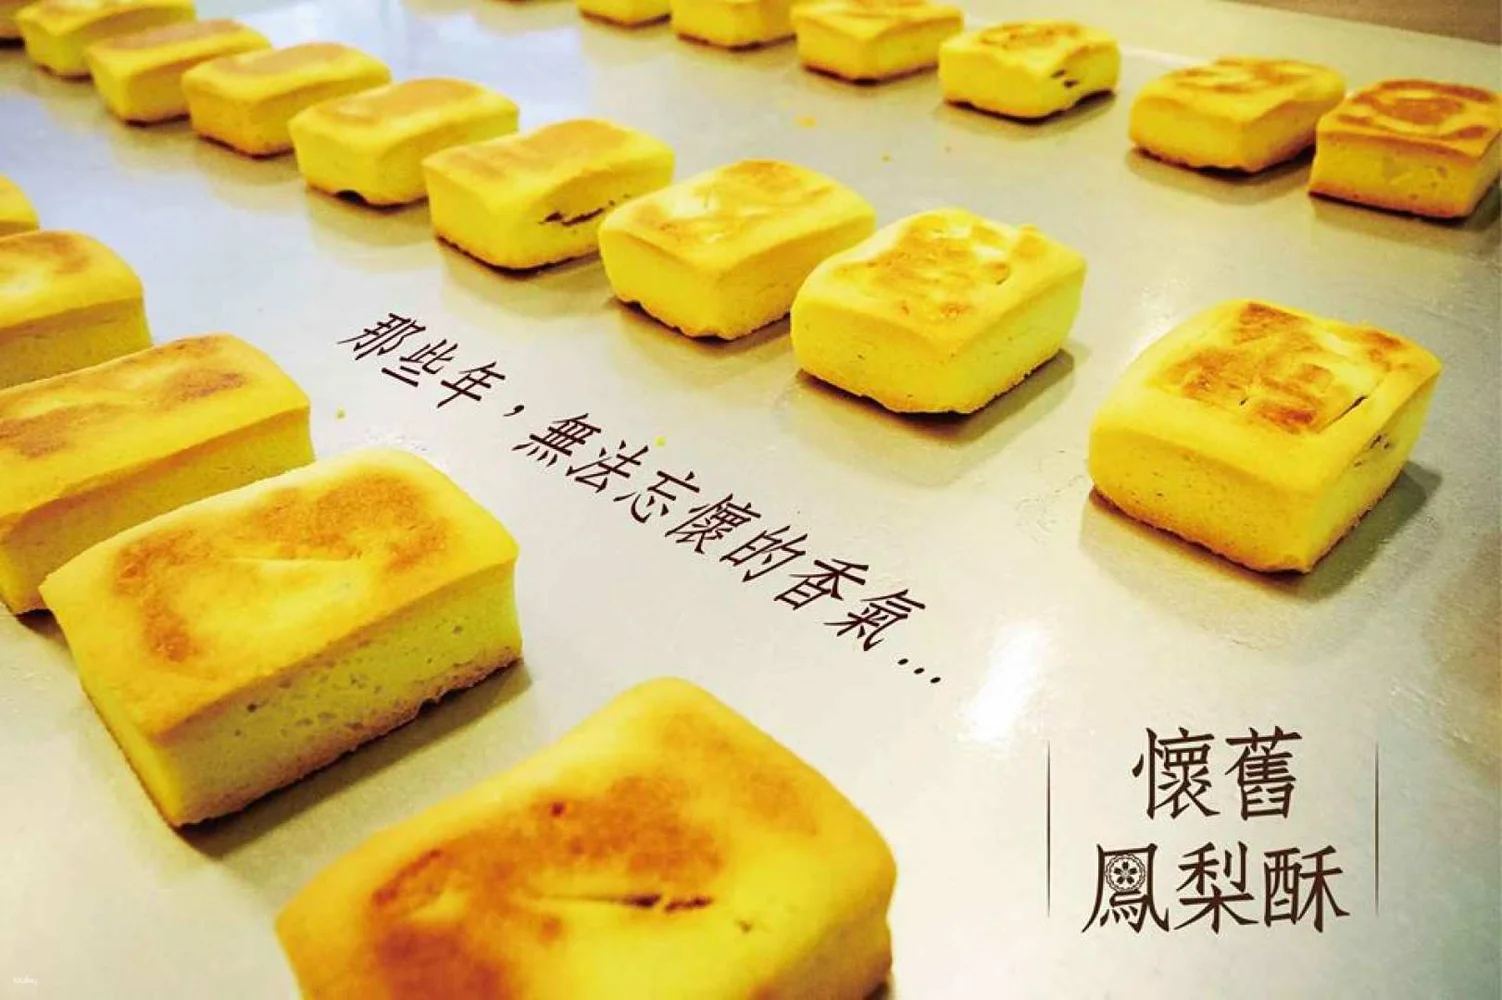 台湾 台北 士林 郭元益糕餅博物館 パイナップルケーキ作り体験 予約